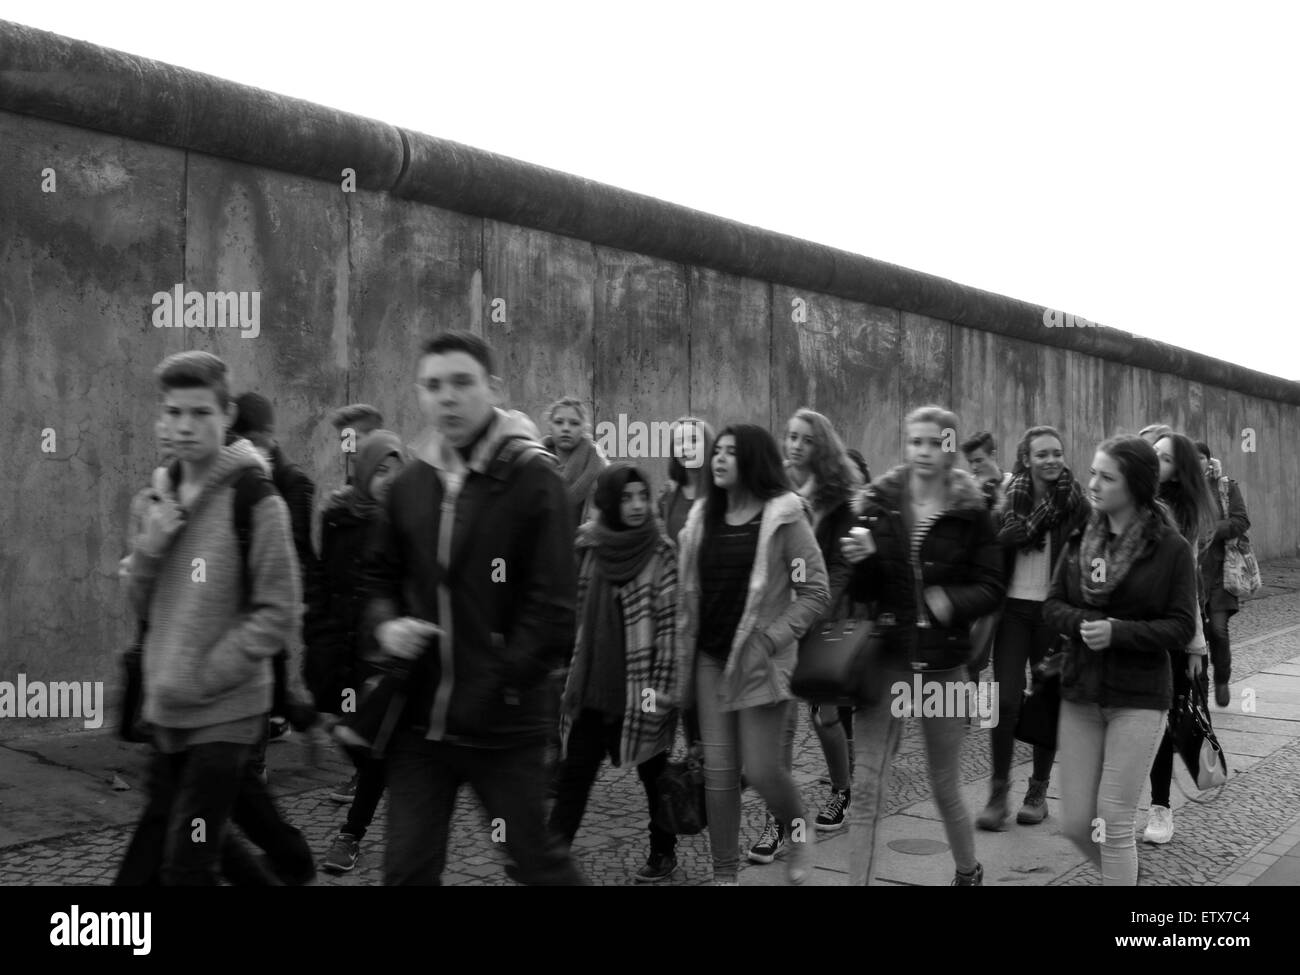 Berlin, Deutschland, ein Teil der ehemaligen Grenzmauer Jugendliche vorbeigehen. Stockfoto